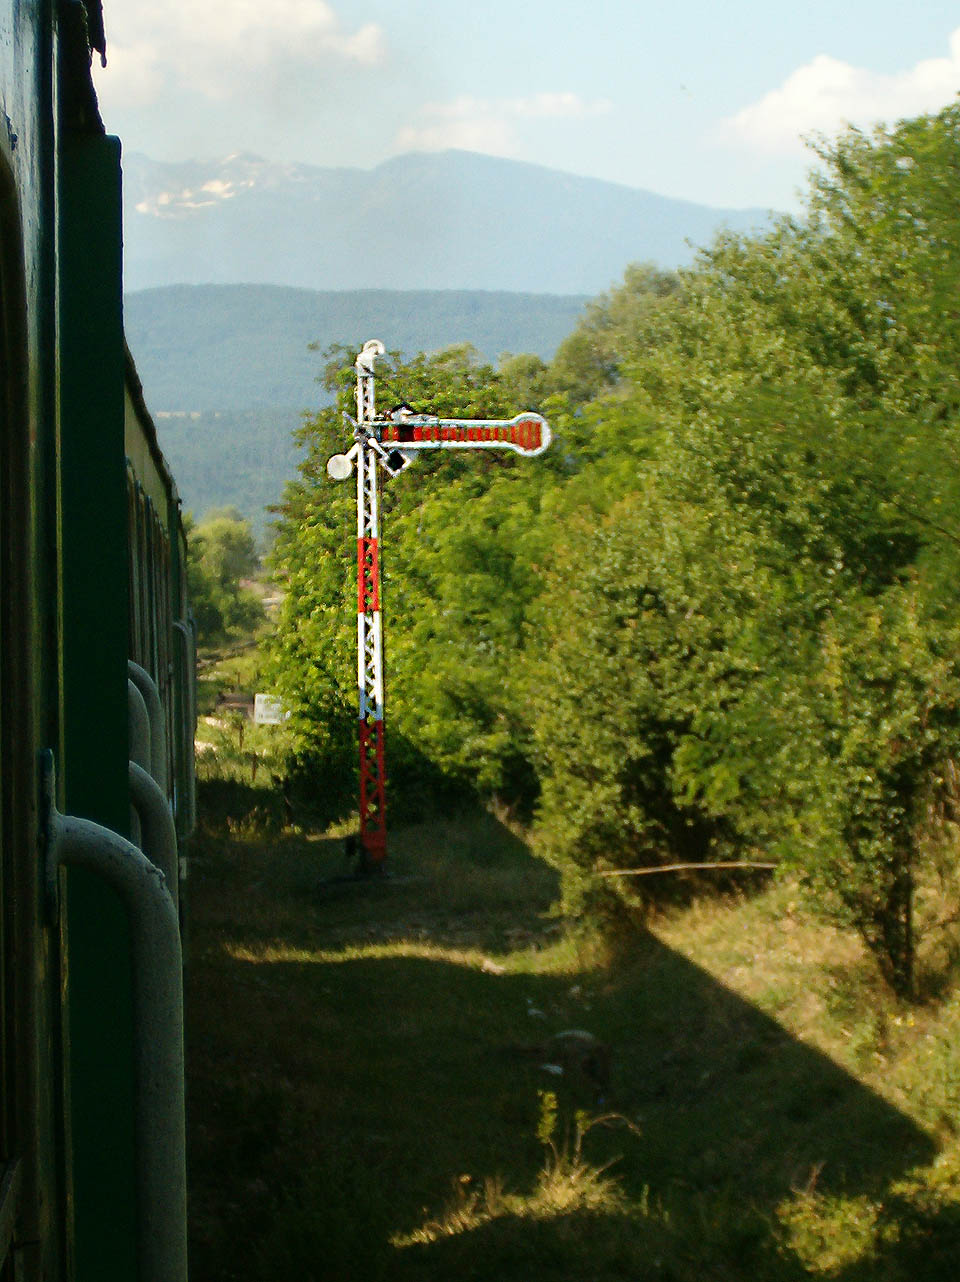 Vjezdové návěstidlo do konečné stanice Добринище na pozadí nejvyššího balkánského pohoří - Мусали в Риле.